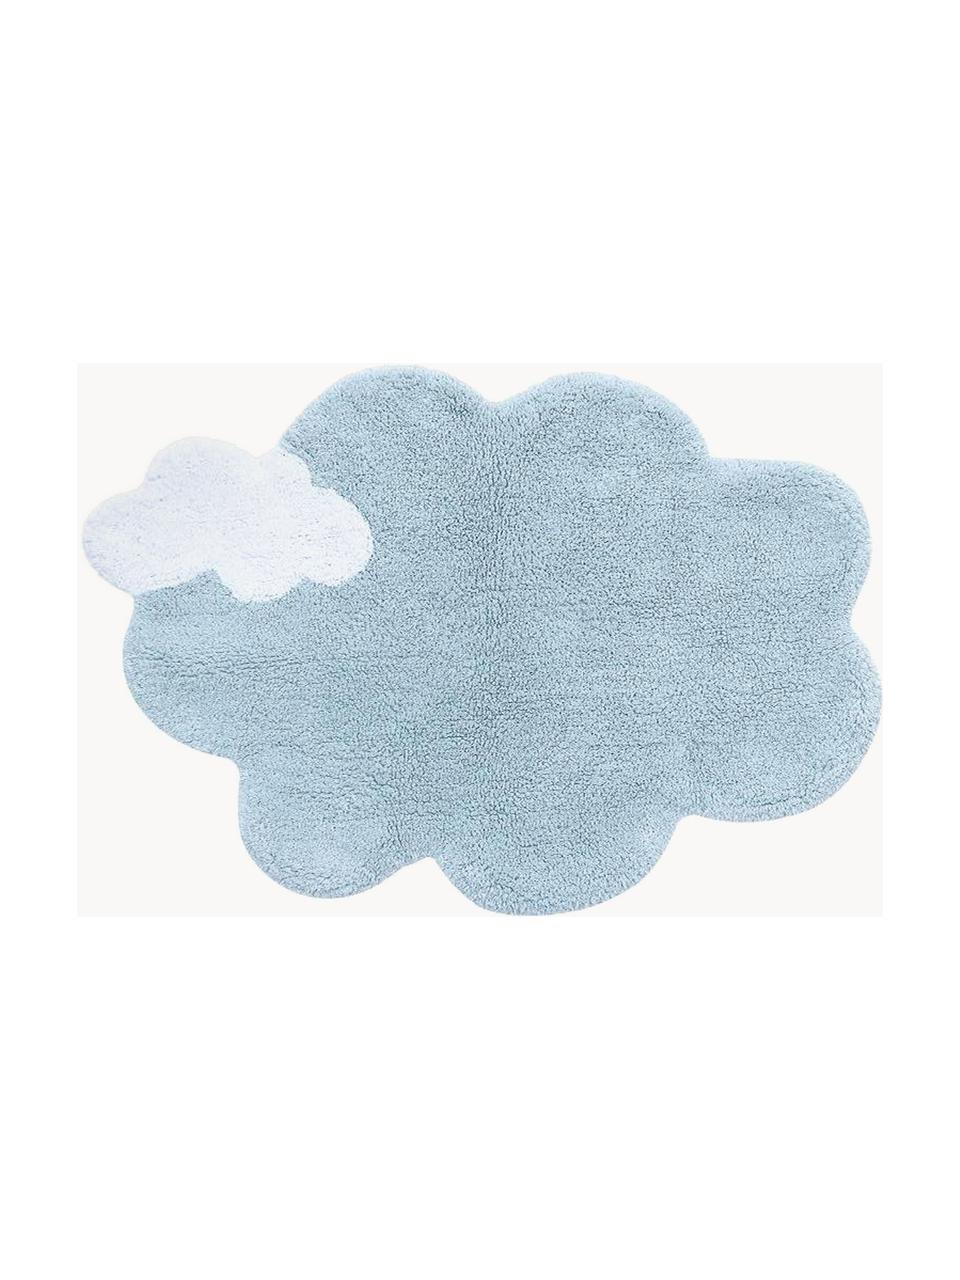 Handgeweven kindervloerkleed Dream, wasbaar, Bovenzijde: 97% katoen, 3% kunstvezel, Onderzijde: 100% katoen, Lichtblauw, wit, B 70 x L 100 cm (maat XS)